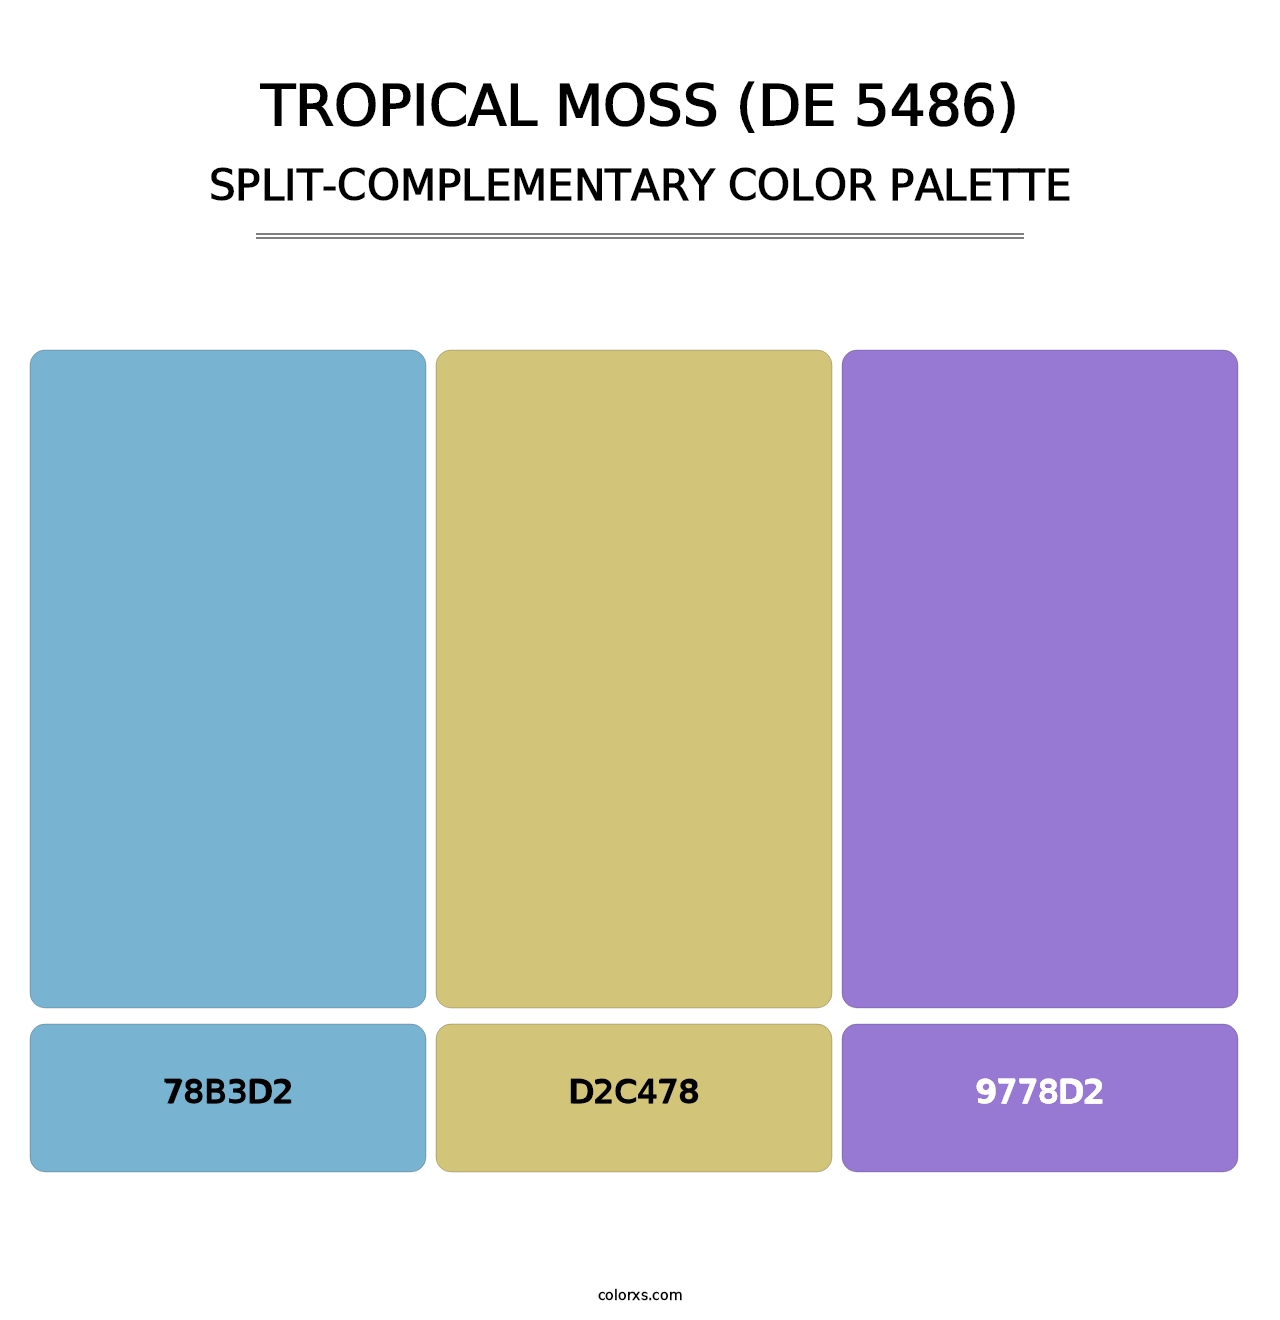 Tropical Moss (DE 5486) - Split-Complementary Color Palette